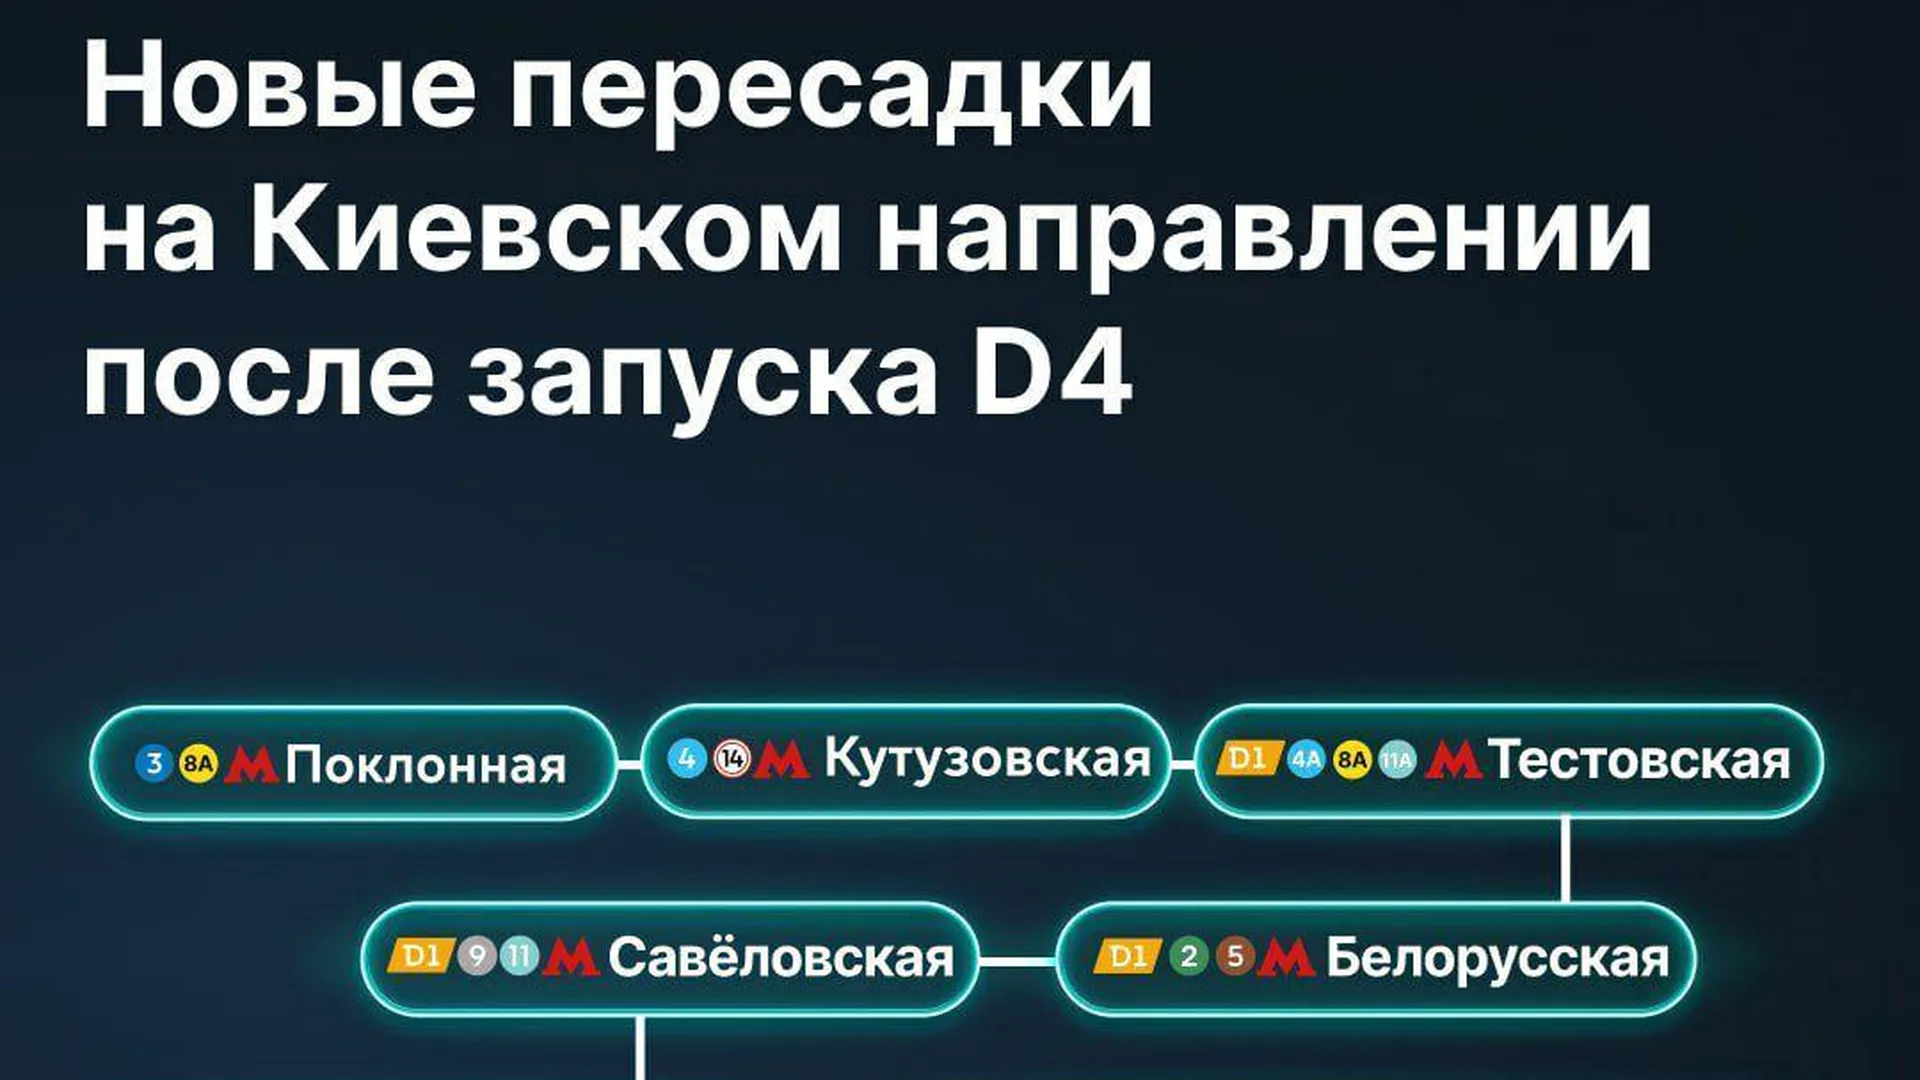 Новые пересадки откроют для пассажиров Киевского направления после запуска МЦД‑4